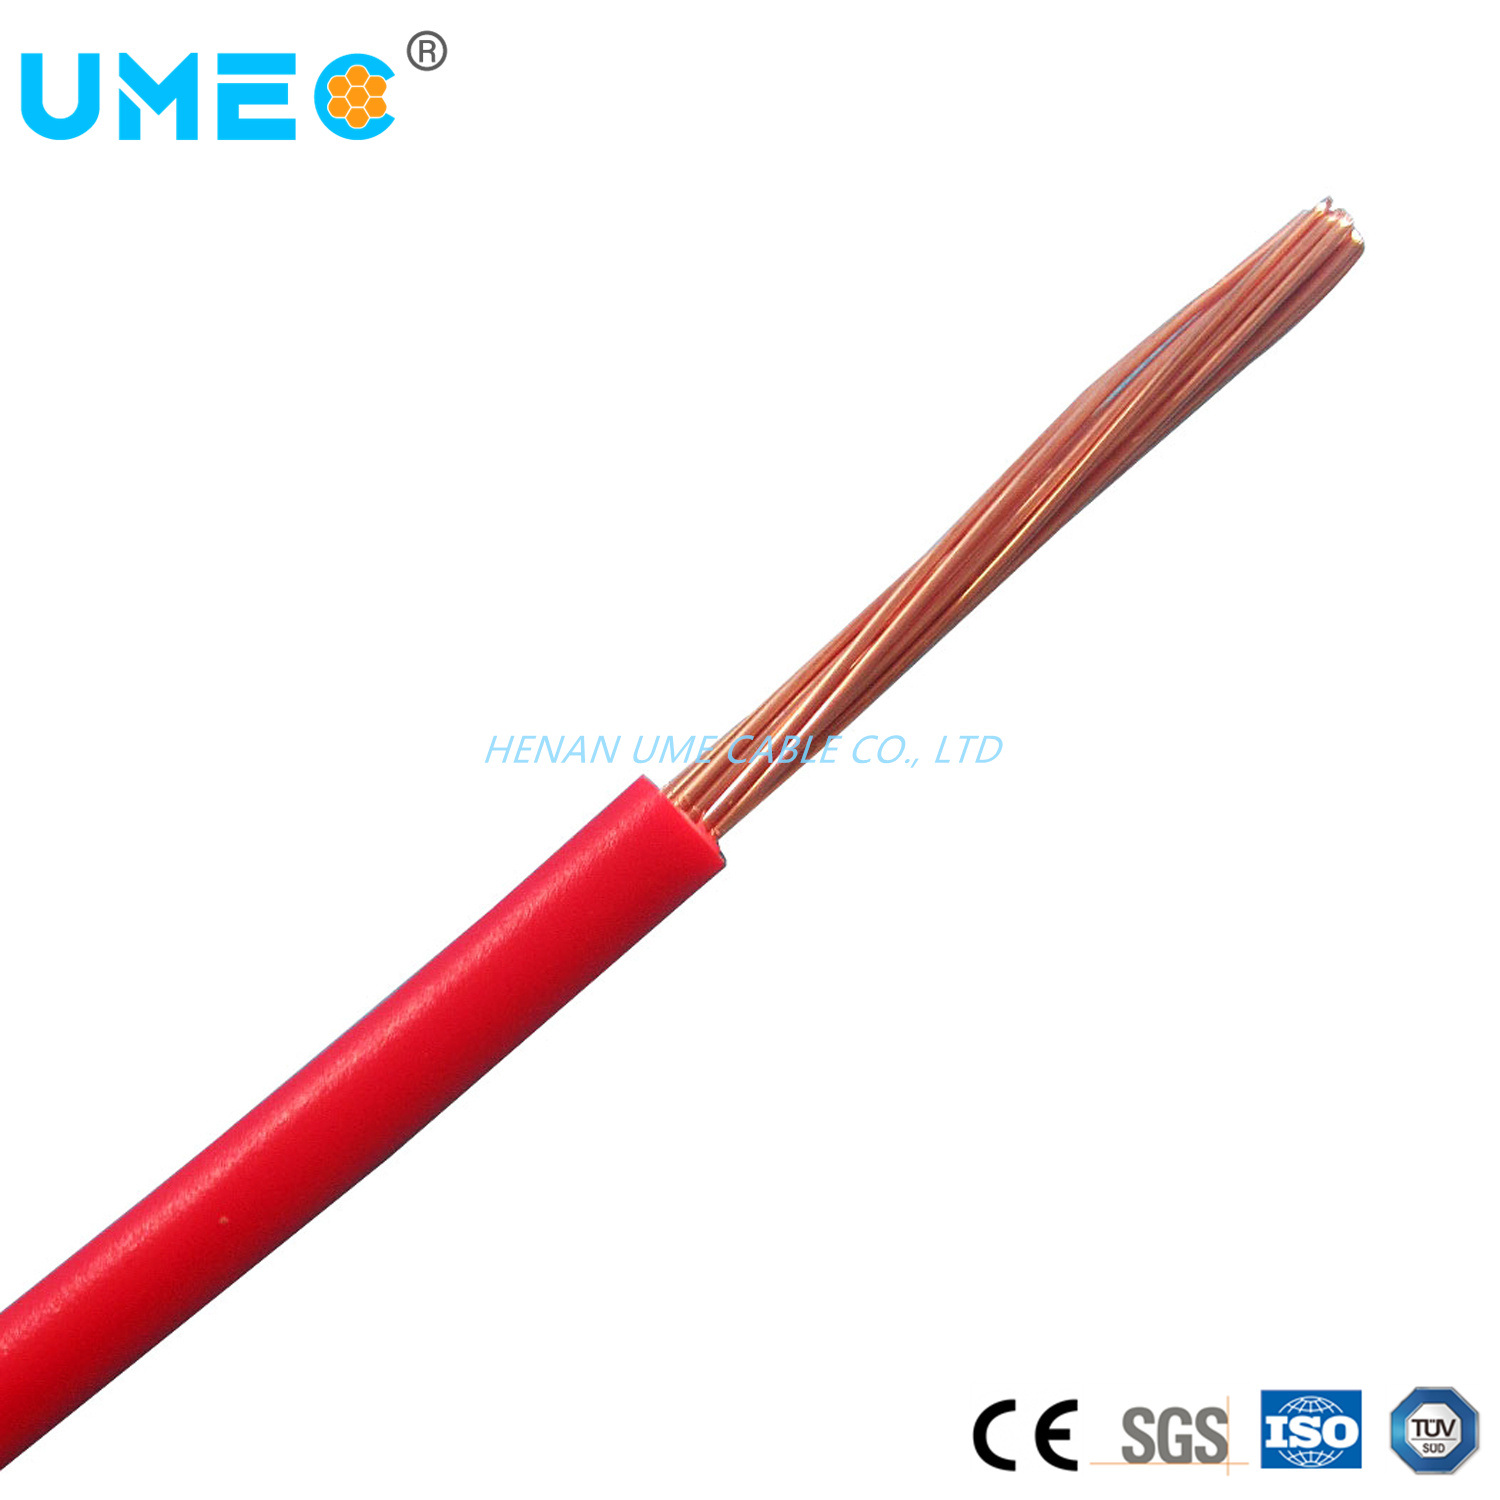 
                Оптовые цены 1.5mm² 2.5mm² 4mm² 6mm² 10 мм² 16 мм² размер электрический провод кабеля для дома технические характеристики электрического кабеля
            